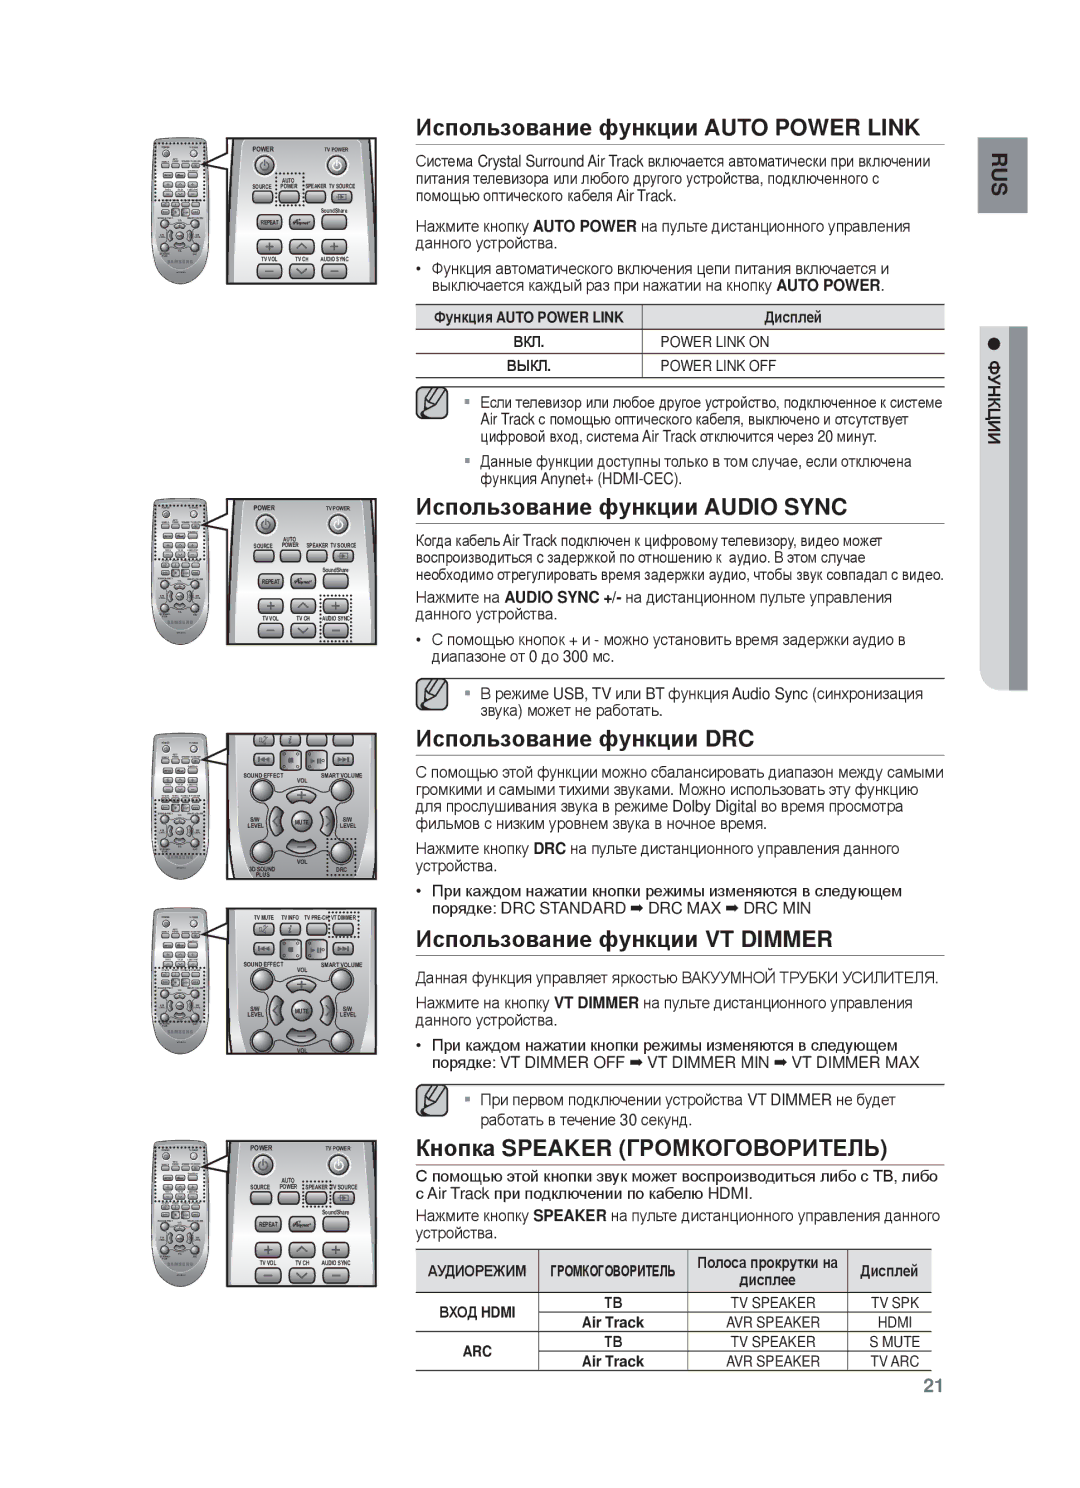 Samsung HW-F750/RU Иɫпɨльзɨвɚниɟ фɭнкции Auto Power Link, Иɫпɨльзɨвɚниɟ фɭнкции Audio Sync, Иɫпɨльзɨвɚниɟ фɭнкции DRC 